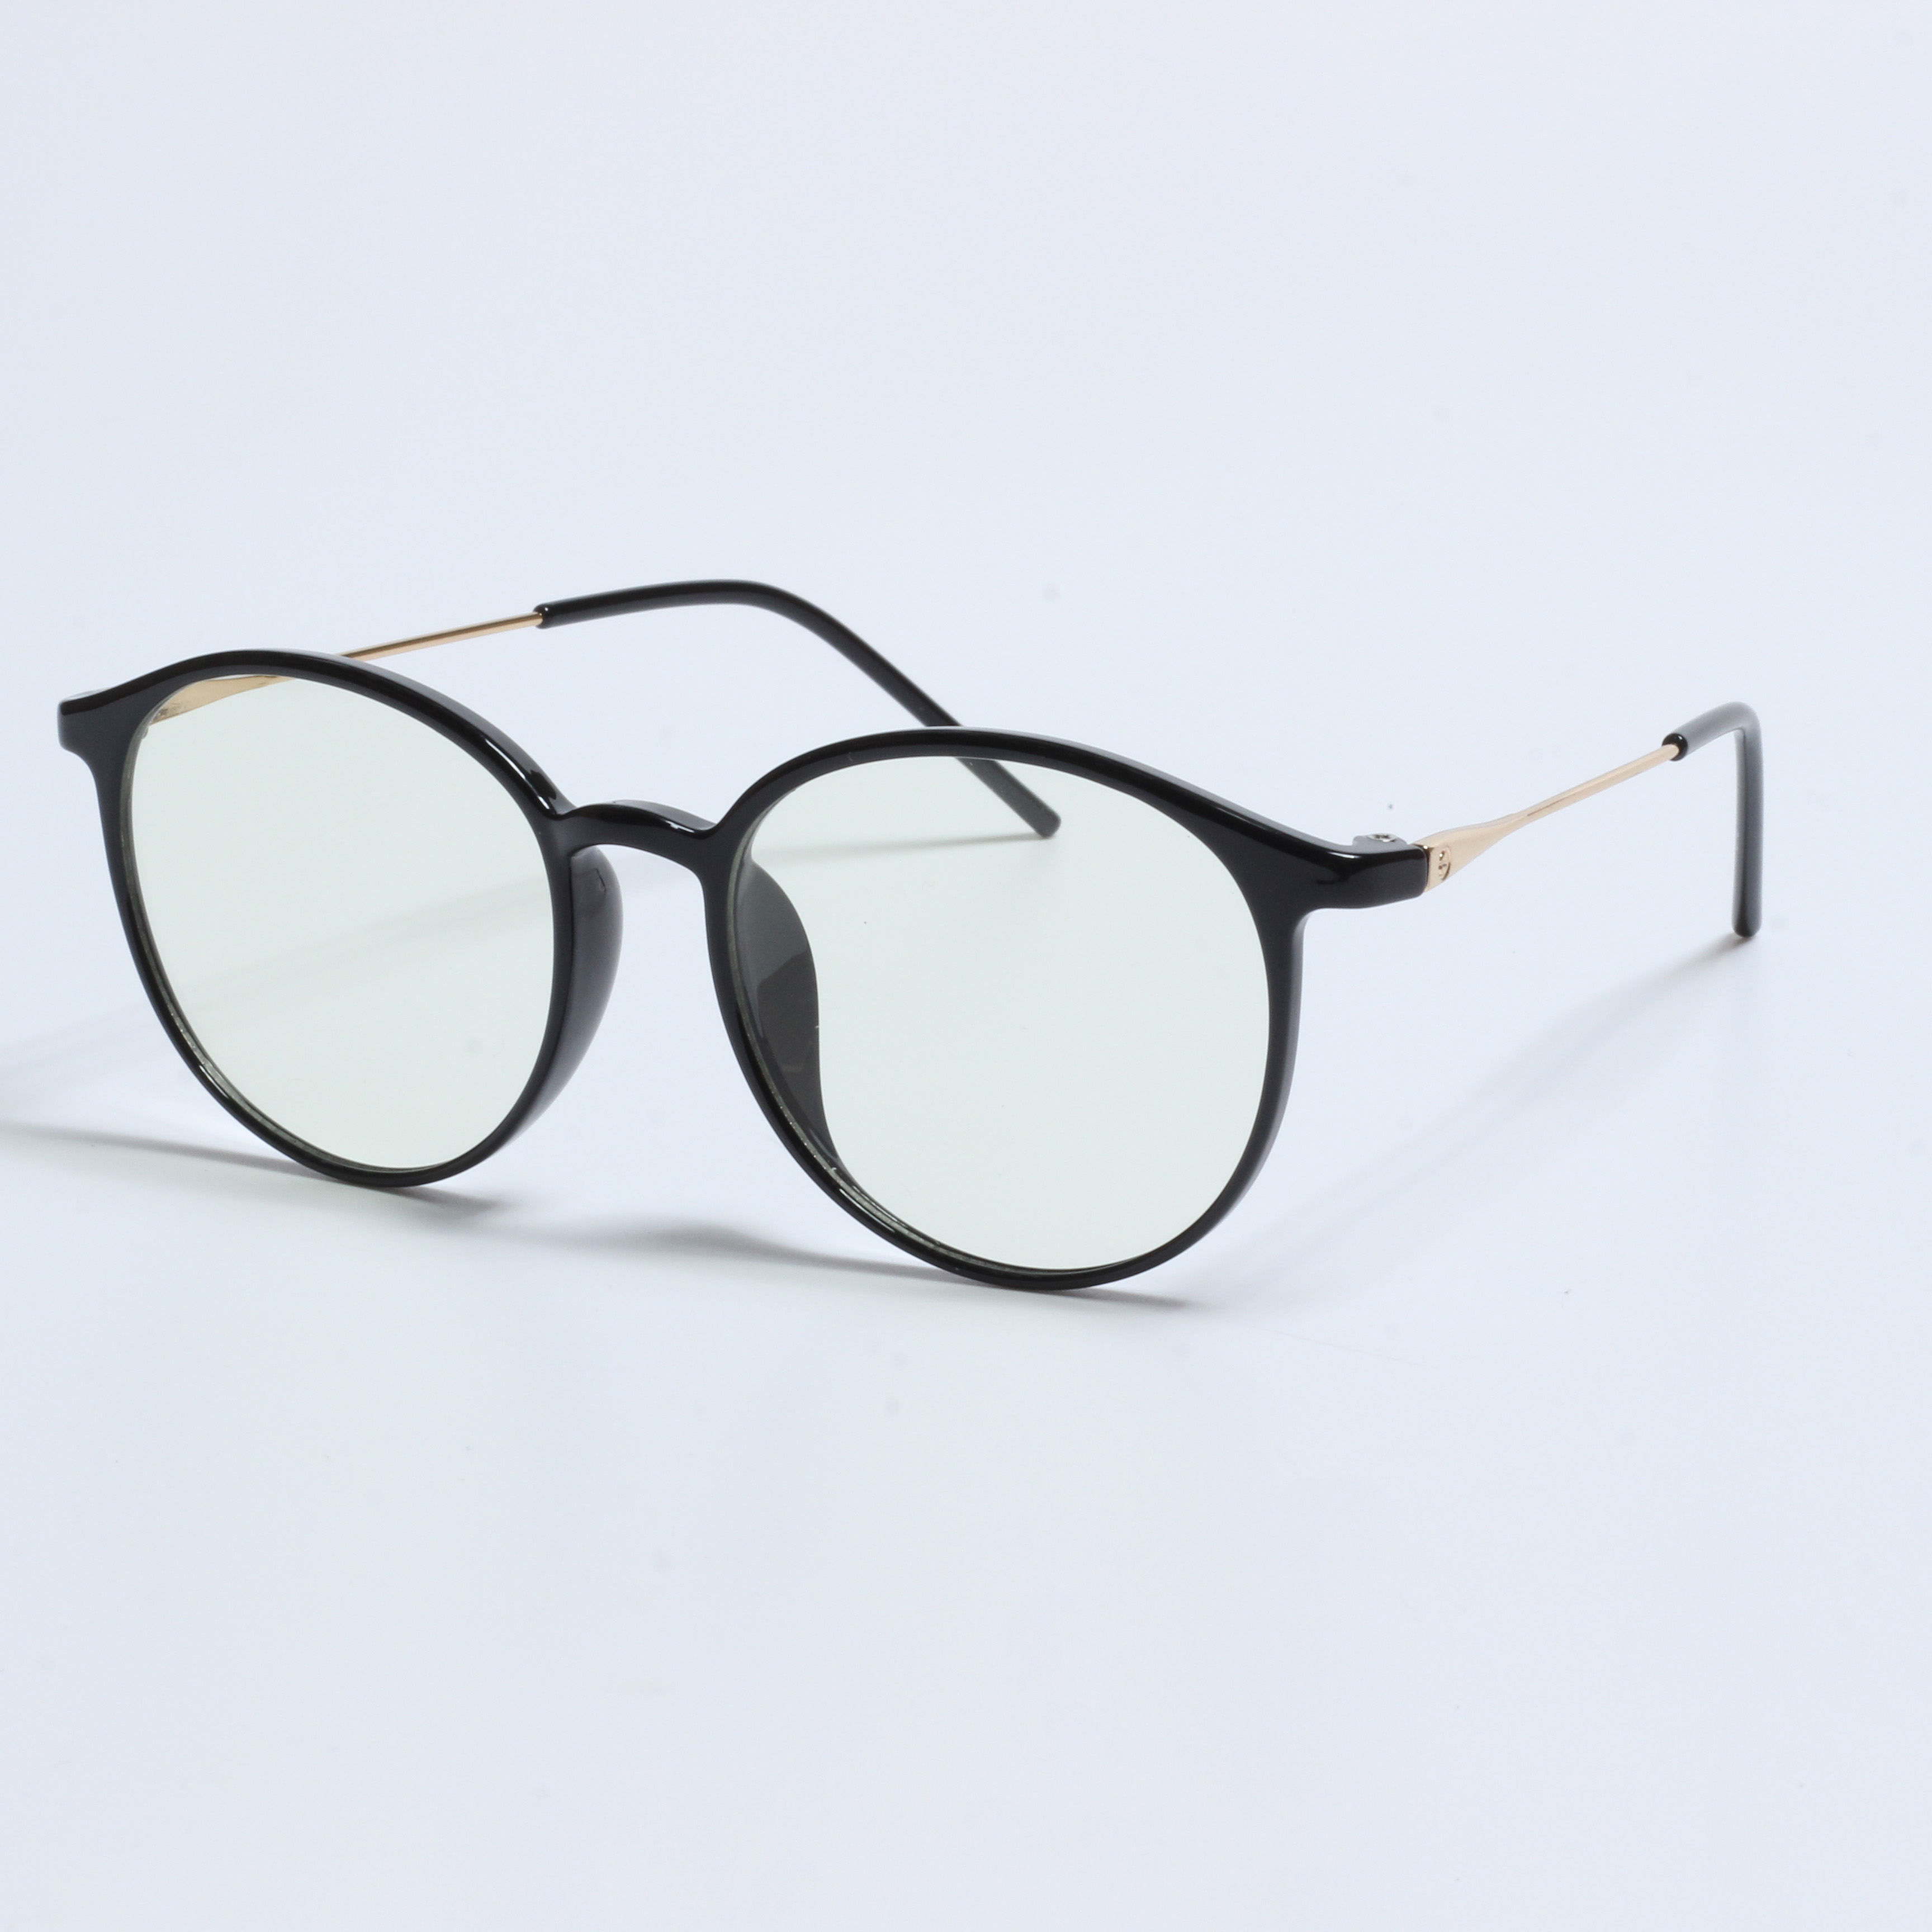 Veleprodaja okvira za naočale TR optički okviri (2)